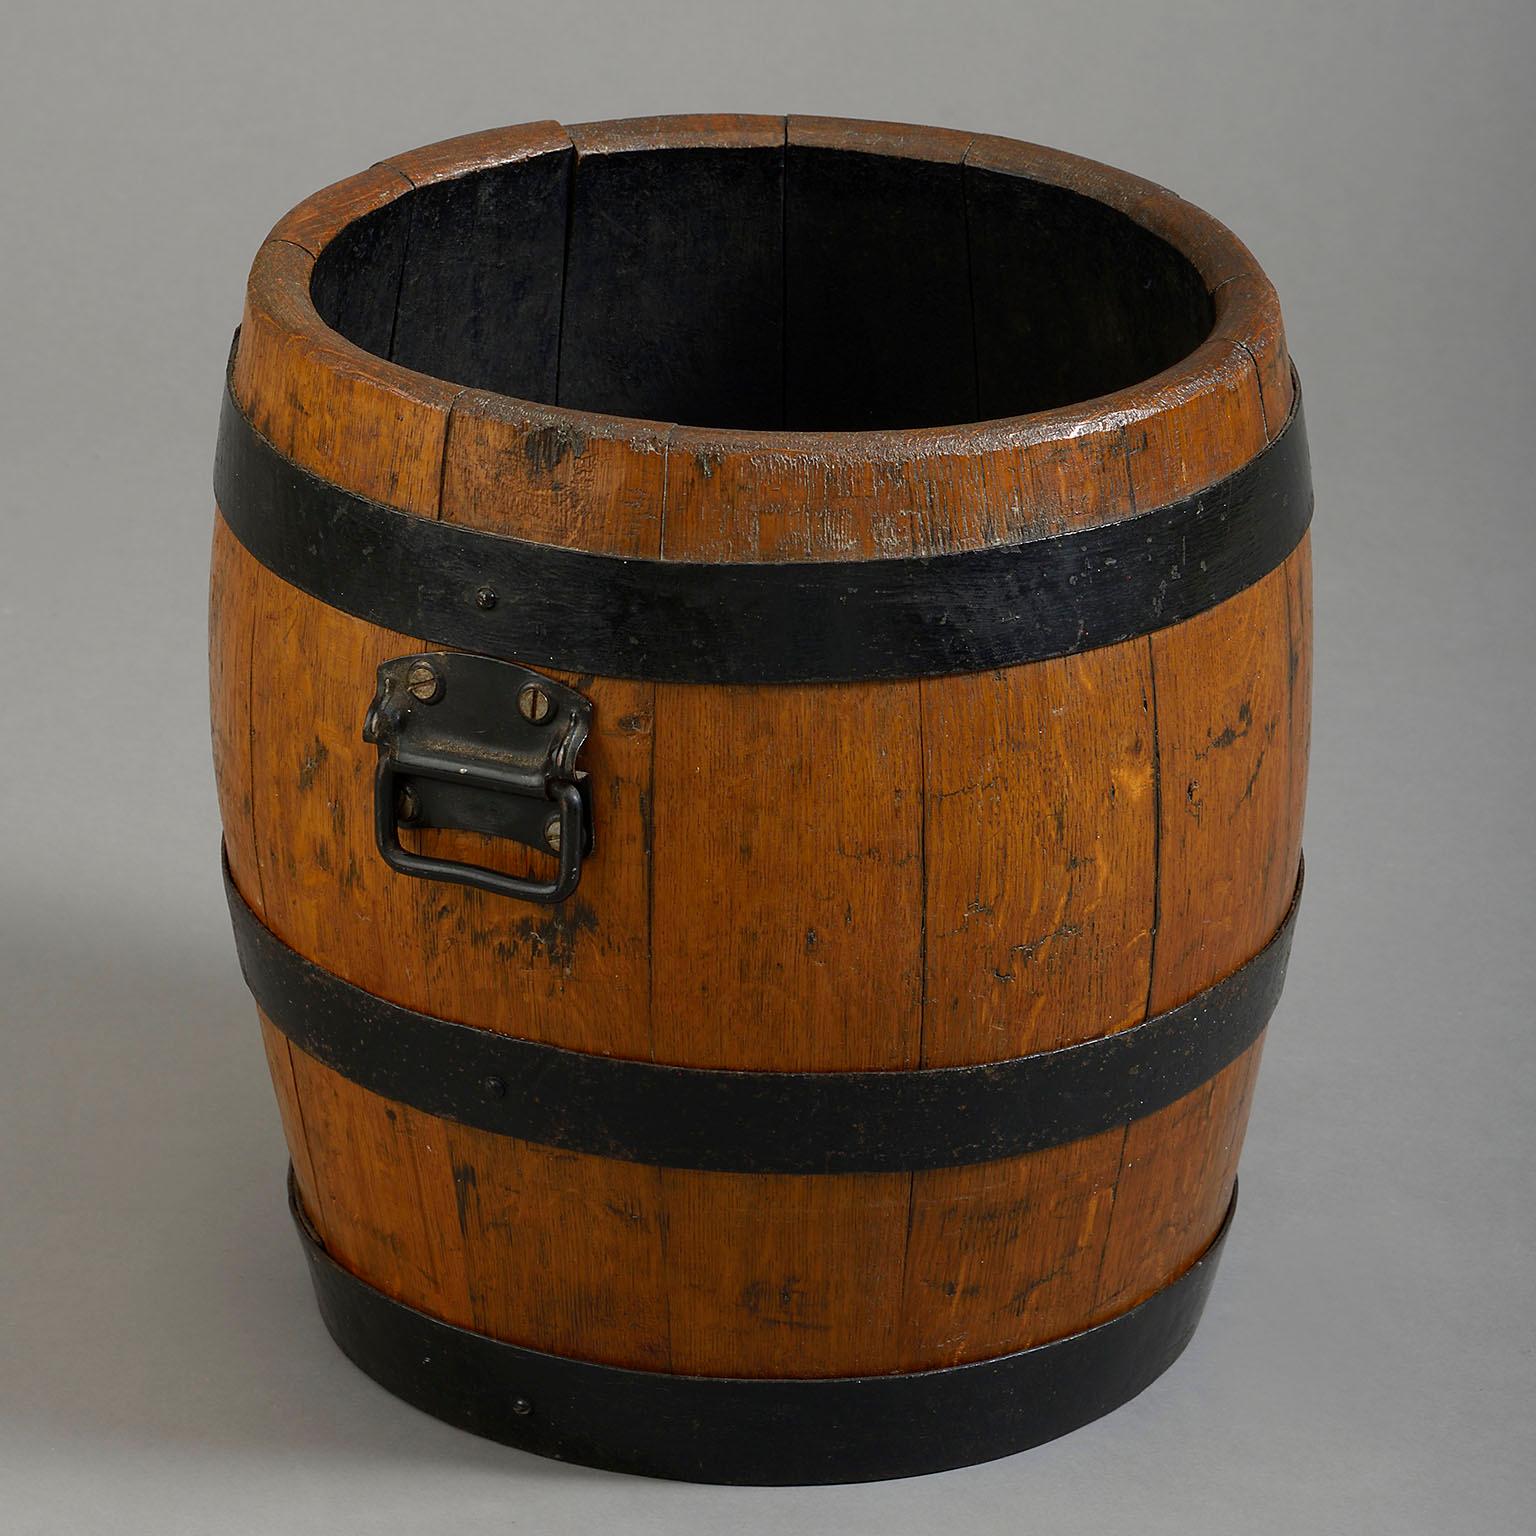 Un tonneau en chêne taillé en fer de la fin du XIXe siècle. Anciennement un tonneau de bière, l'avant et le dessous sont gravés Courage & Co Alton.

Circa 1890 Angleterre

Dimensions : 17 L x 16 P x 17 H pouces
43 L x 40,5 P x 43 H cm.